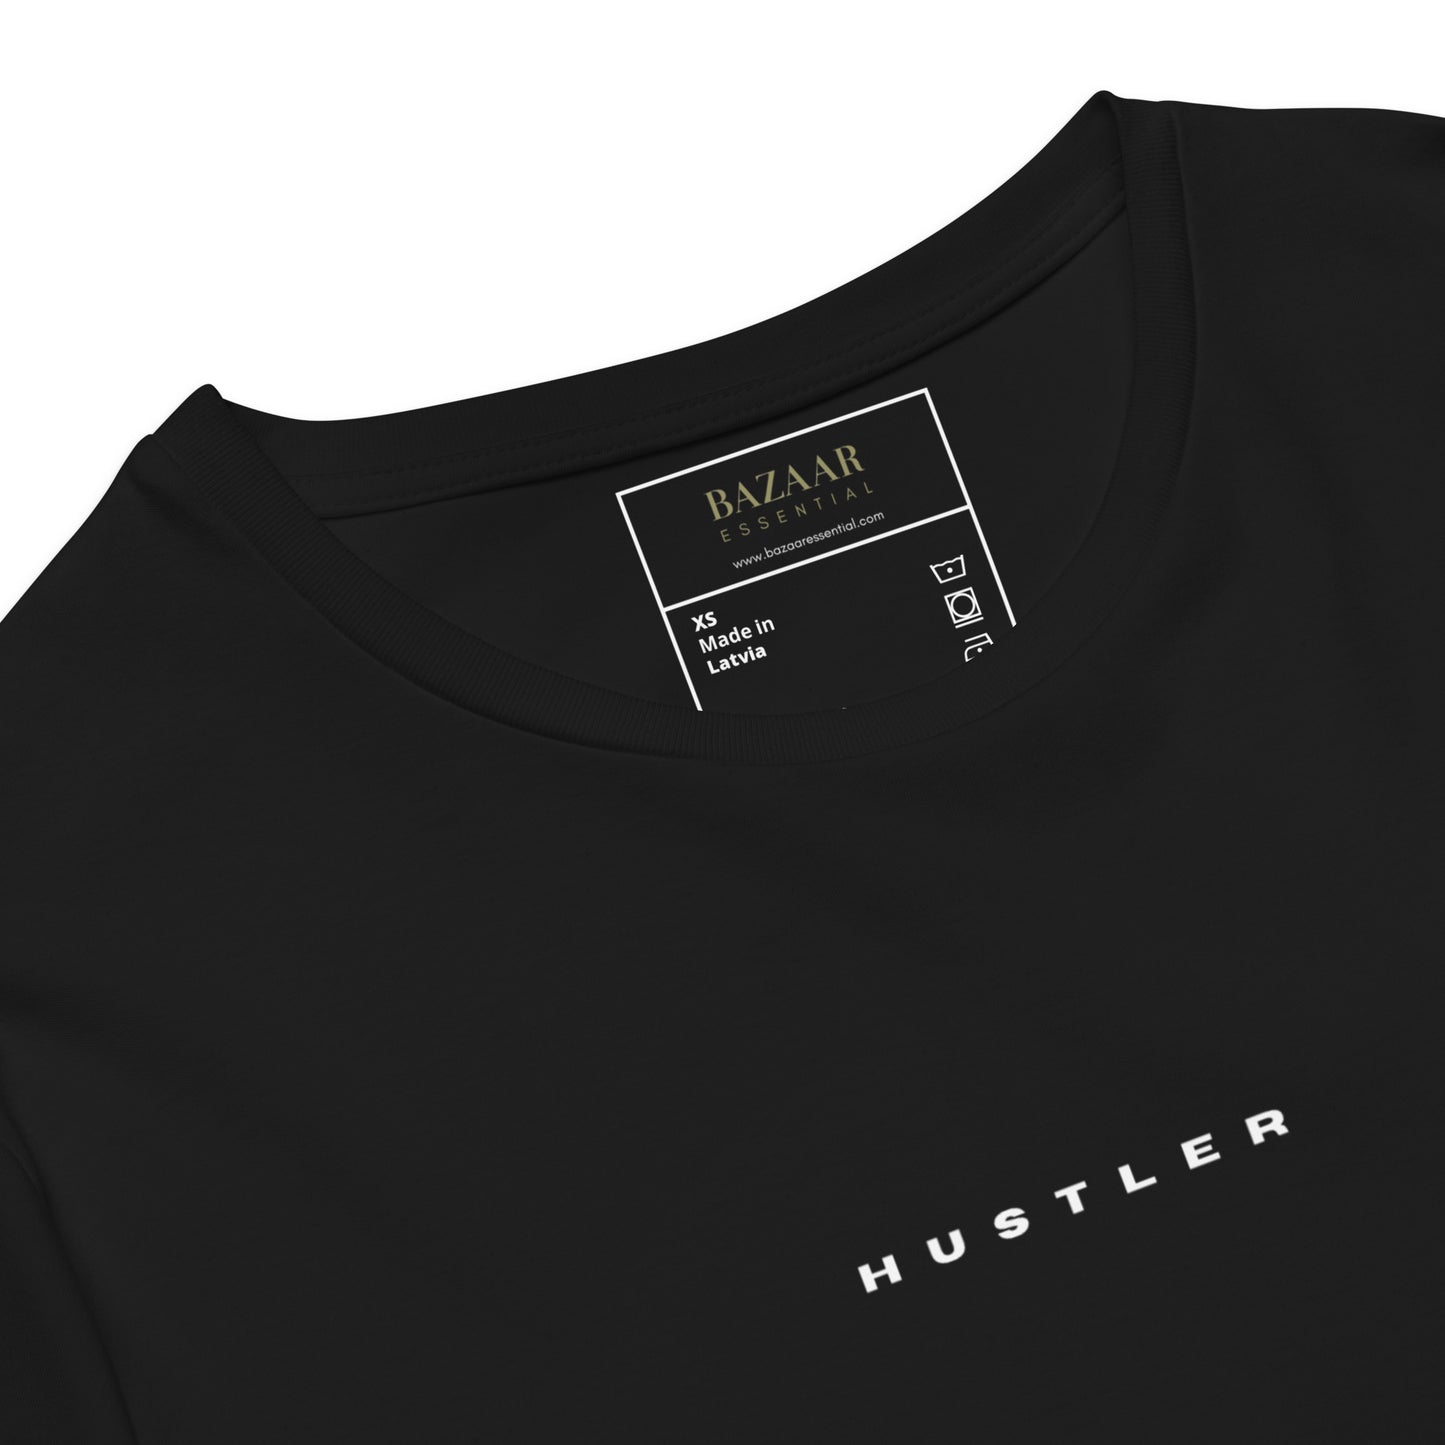 Hustler Lux T-shirt